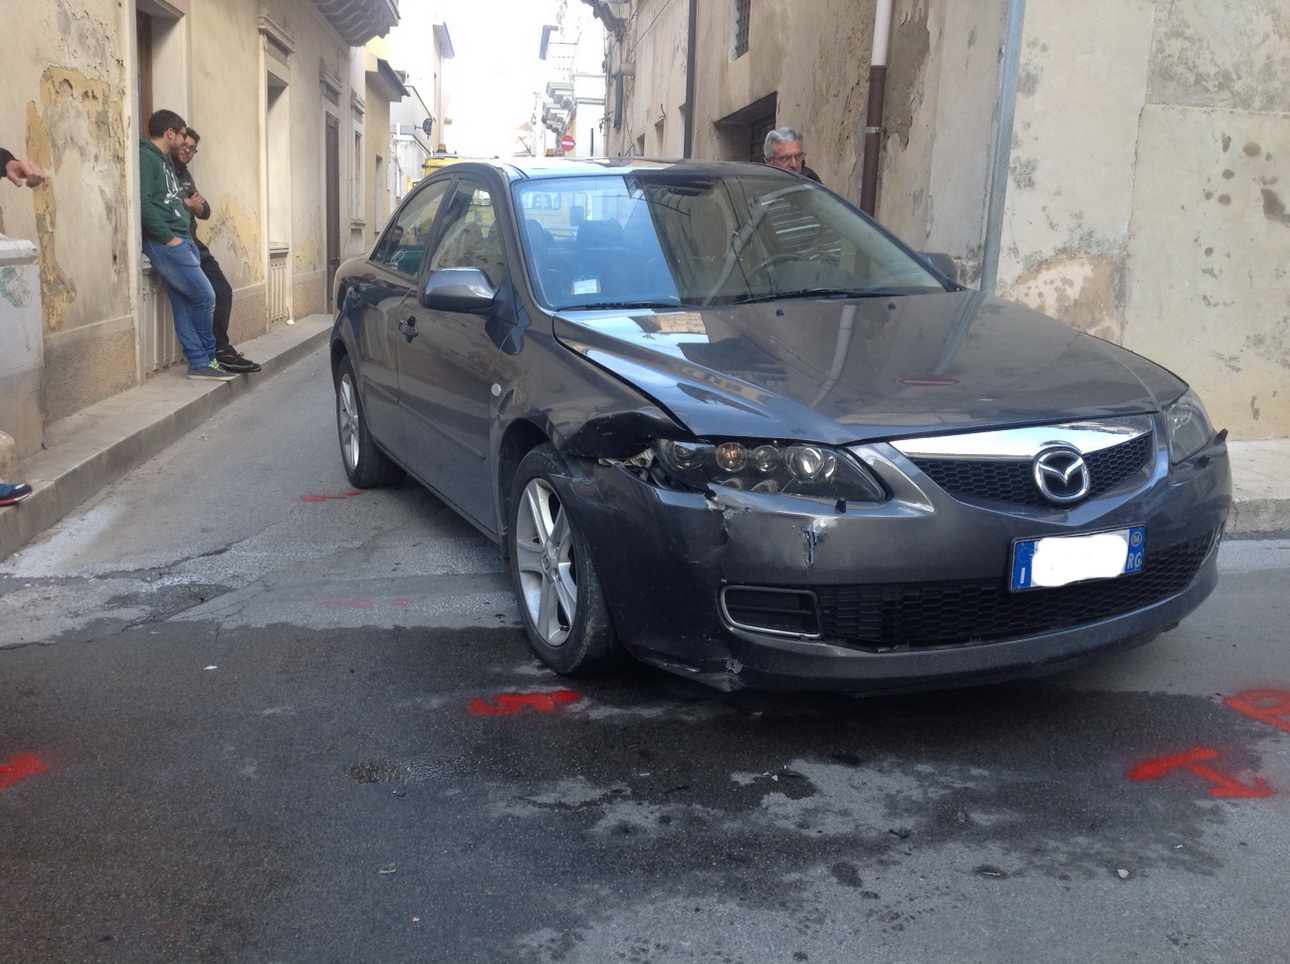  Santa Croce – Incidente stradale in via Castel S. Elena. Nessun ferito, solo danni alle due autovetture